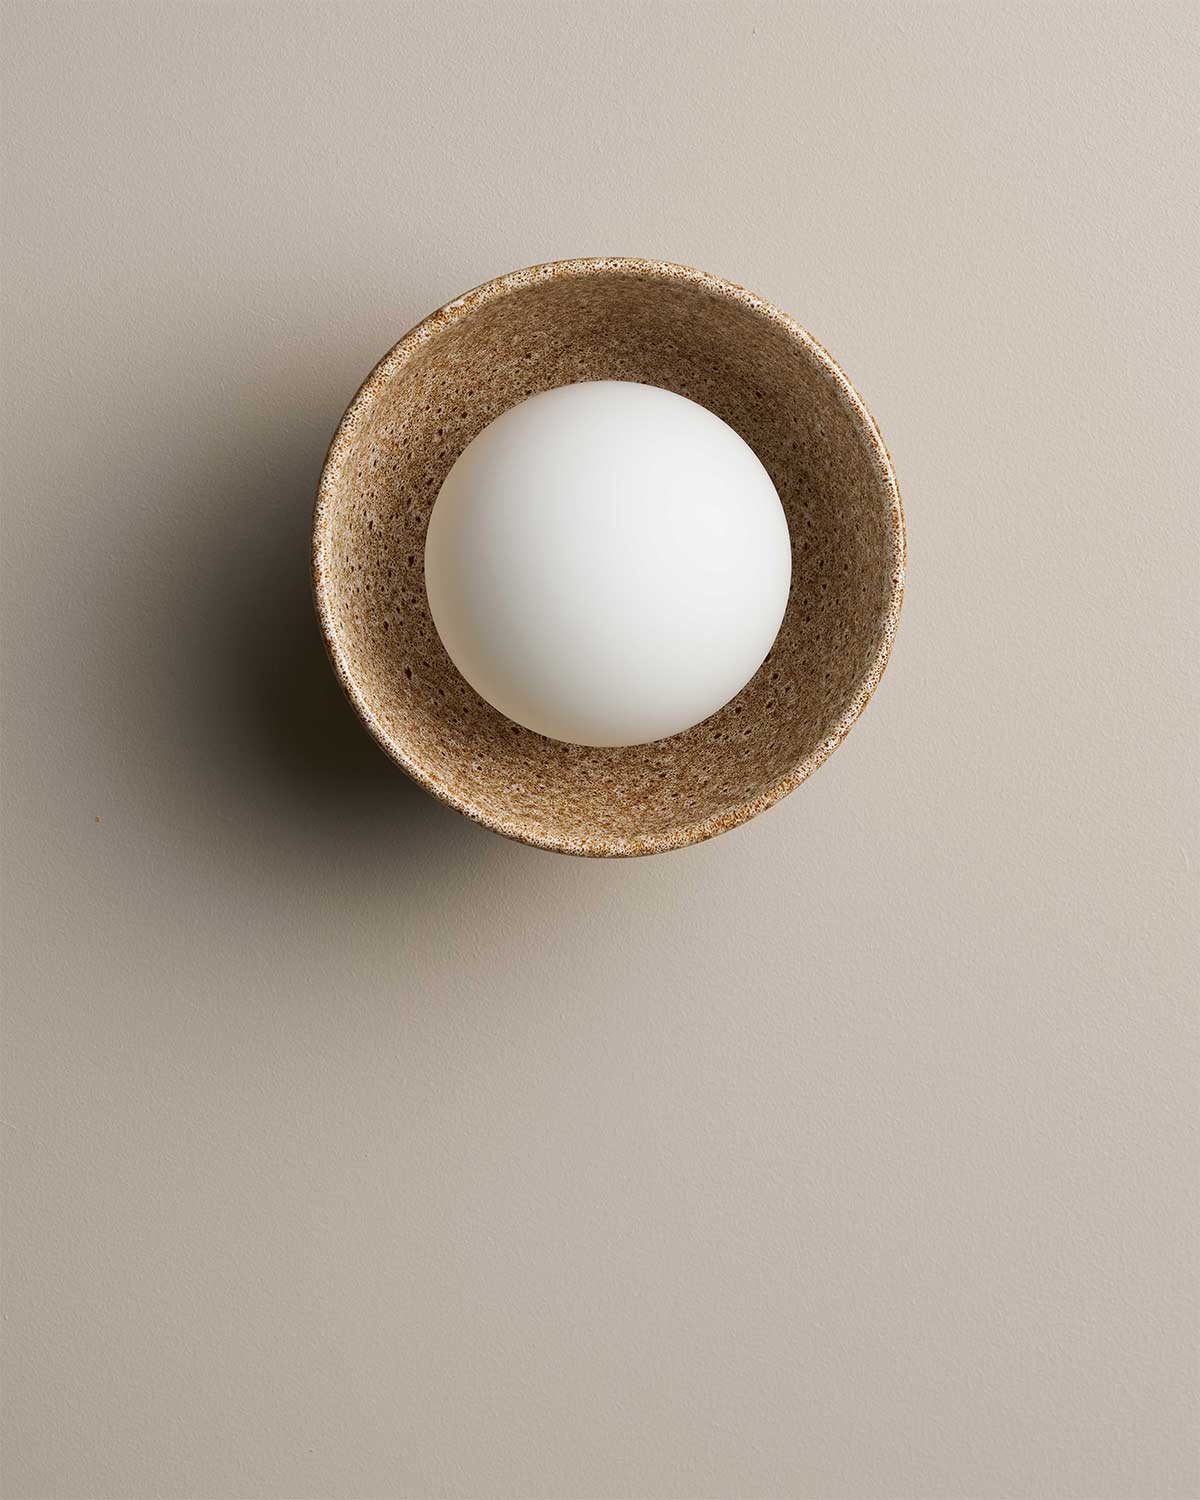 Ceramic Wall Bowl Sconce Light / White Ochre